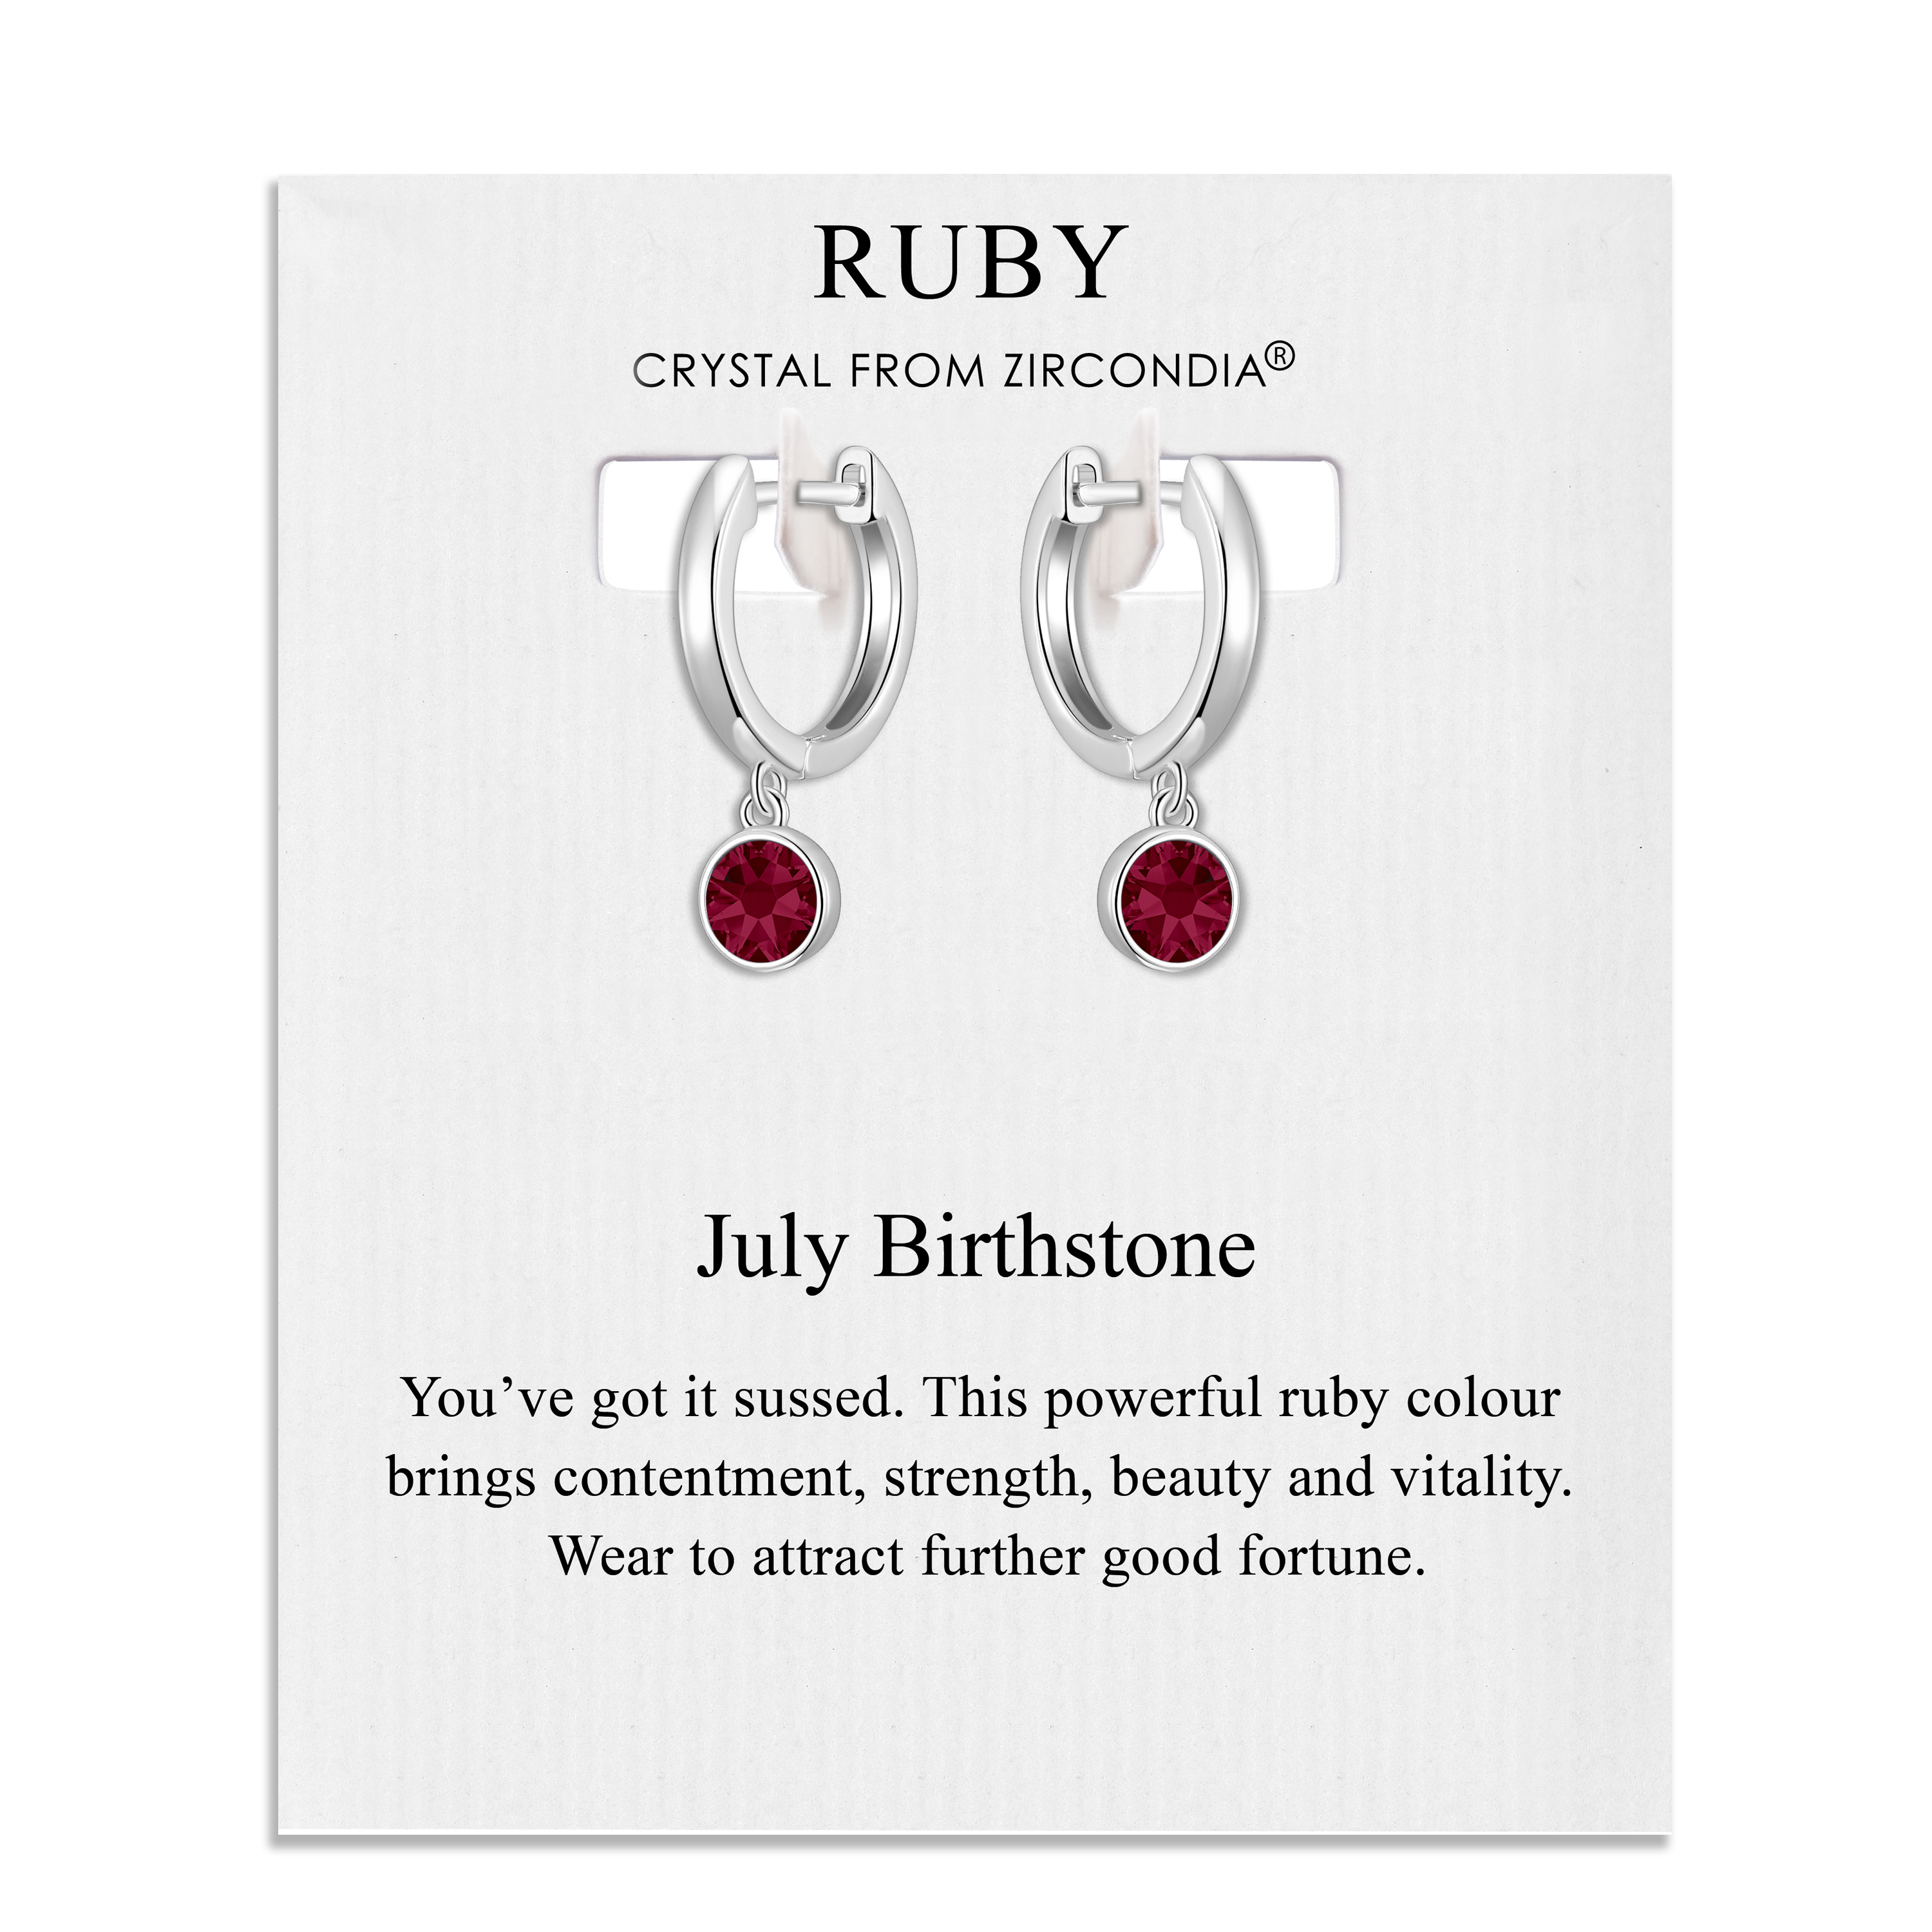 July Birthstone Hoop Earrings Created with Ruby Zircondia® Crystals by Philip Jones Jewellery